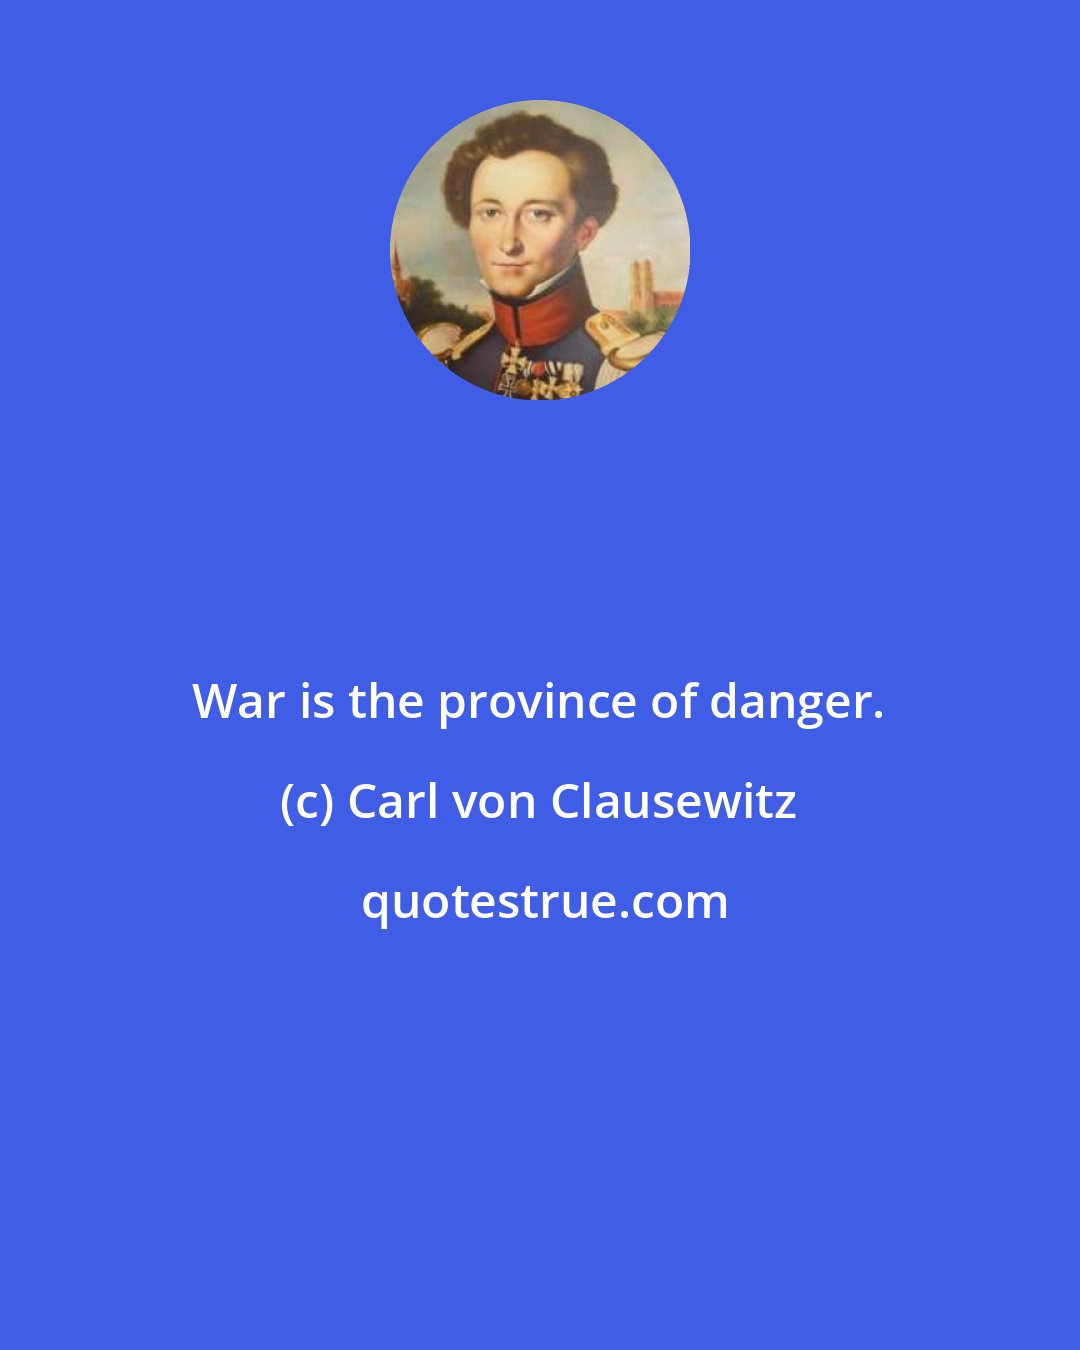 Carl von Clausewitz: War is the province of danger.